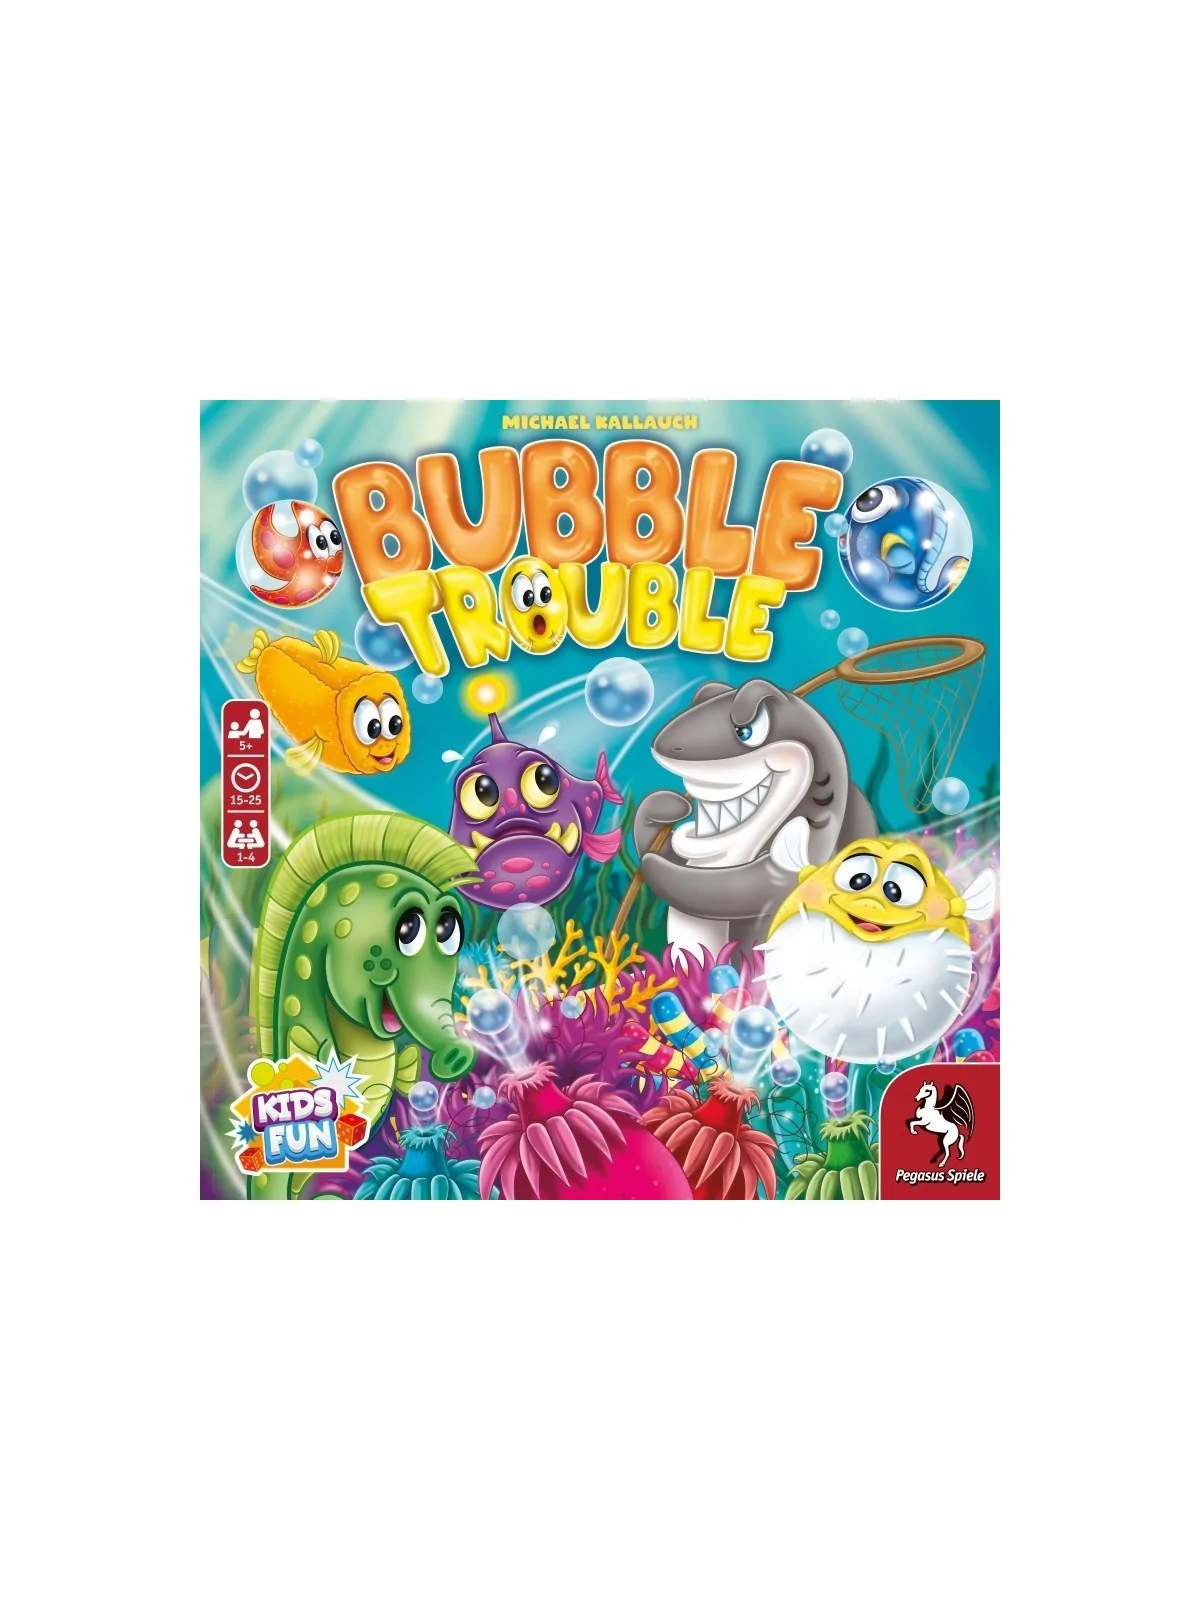 Comprar Bubble Trouble (Inglés) barato al mejor precio 26,95 € de Pega